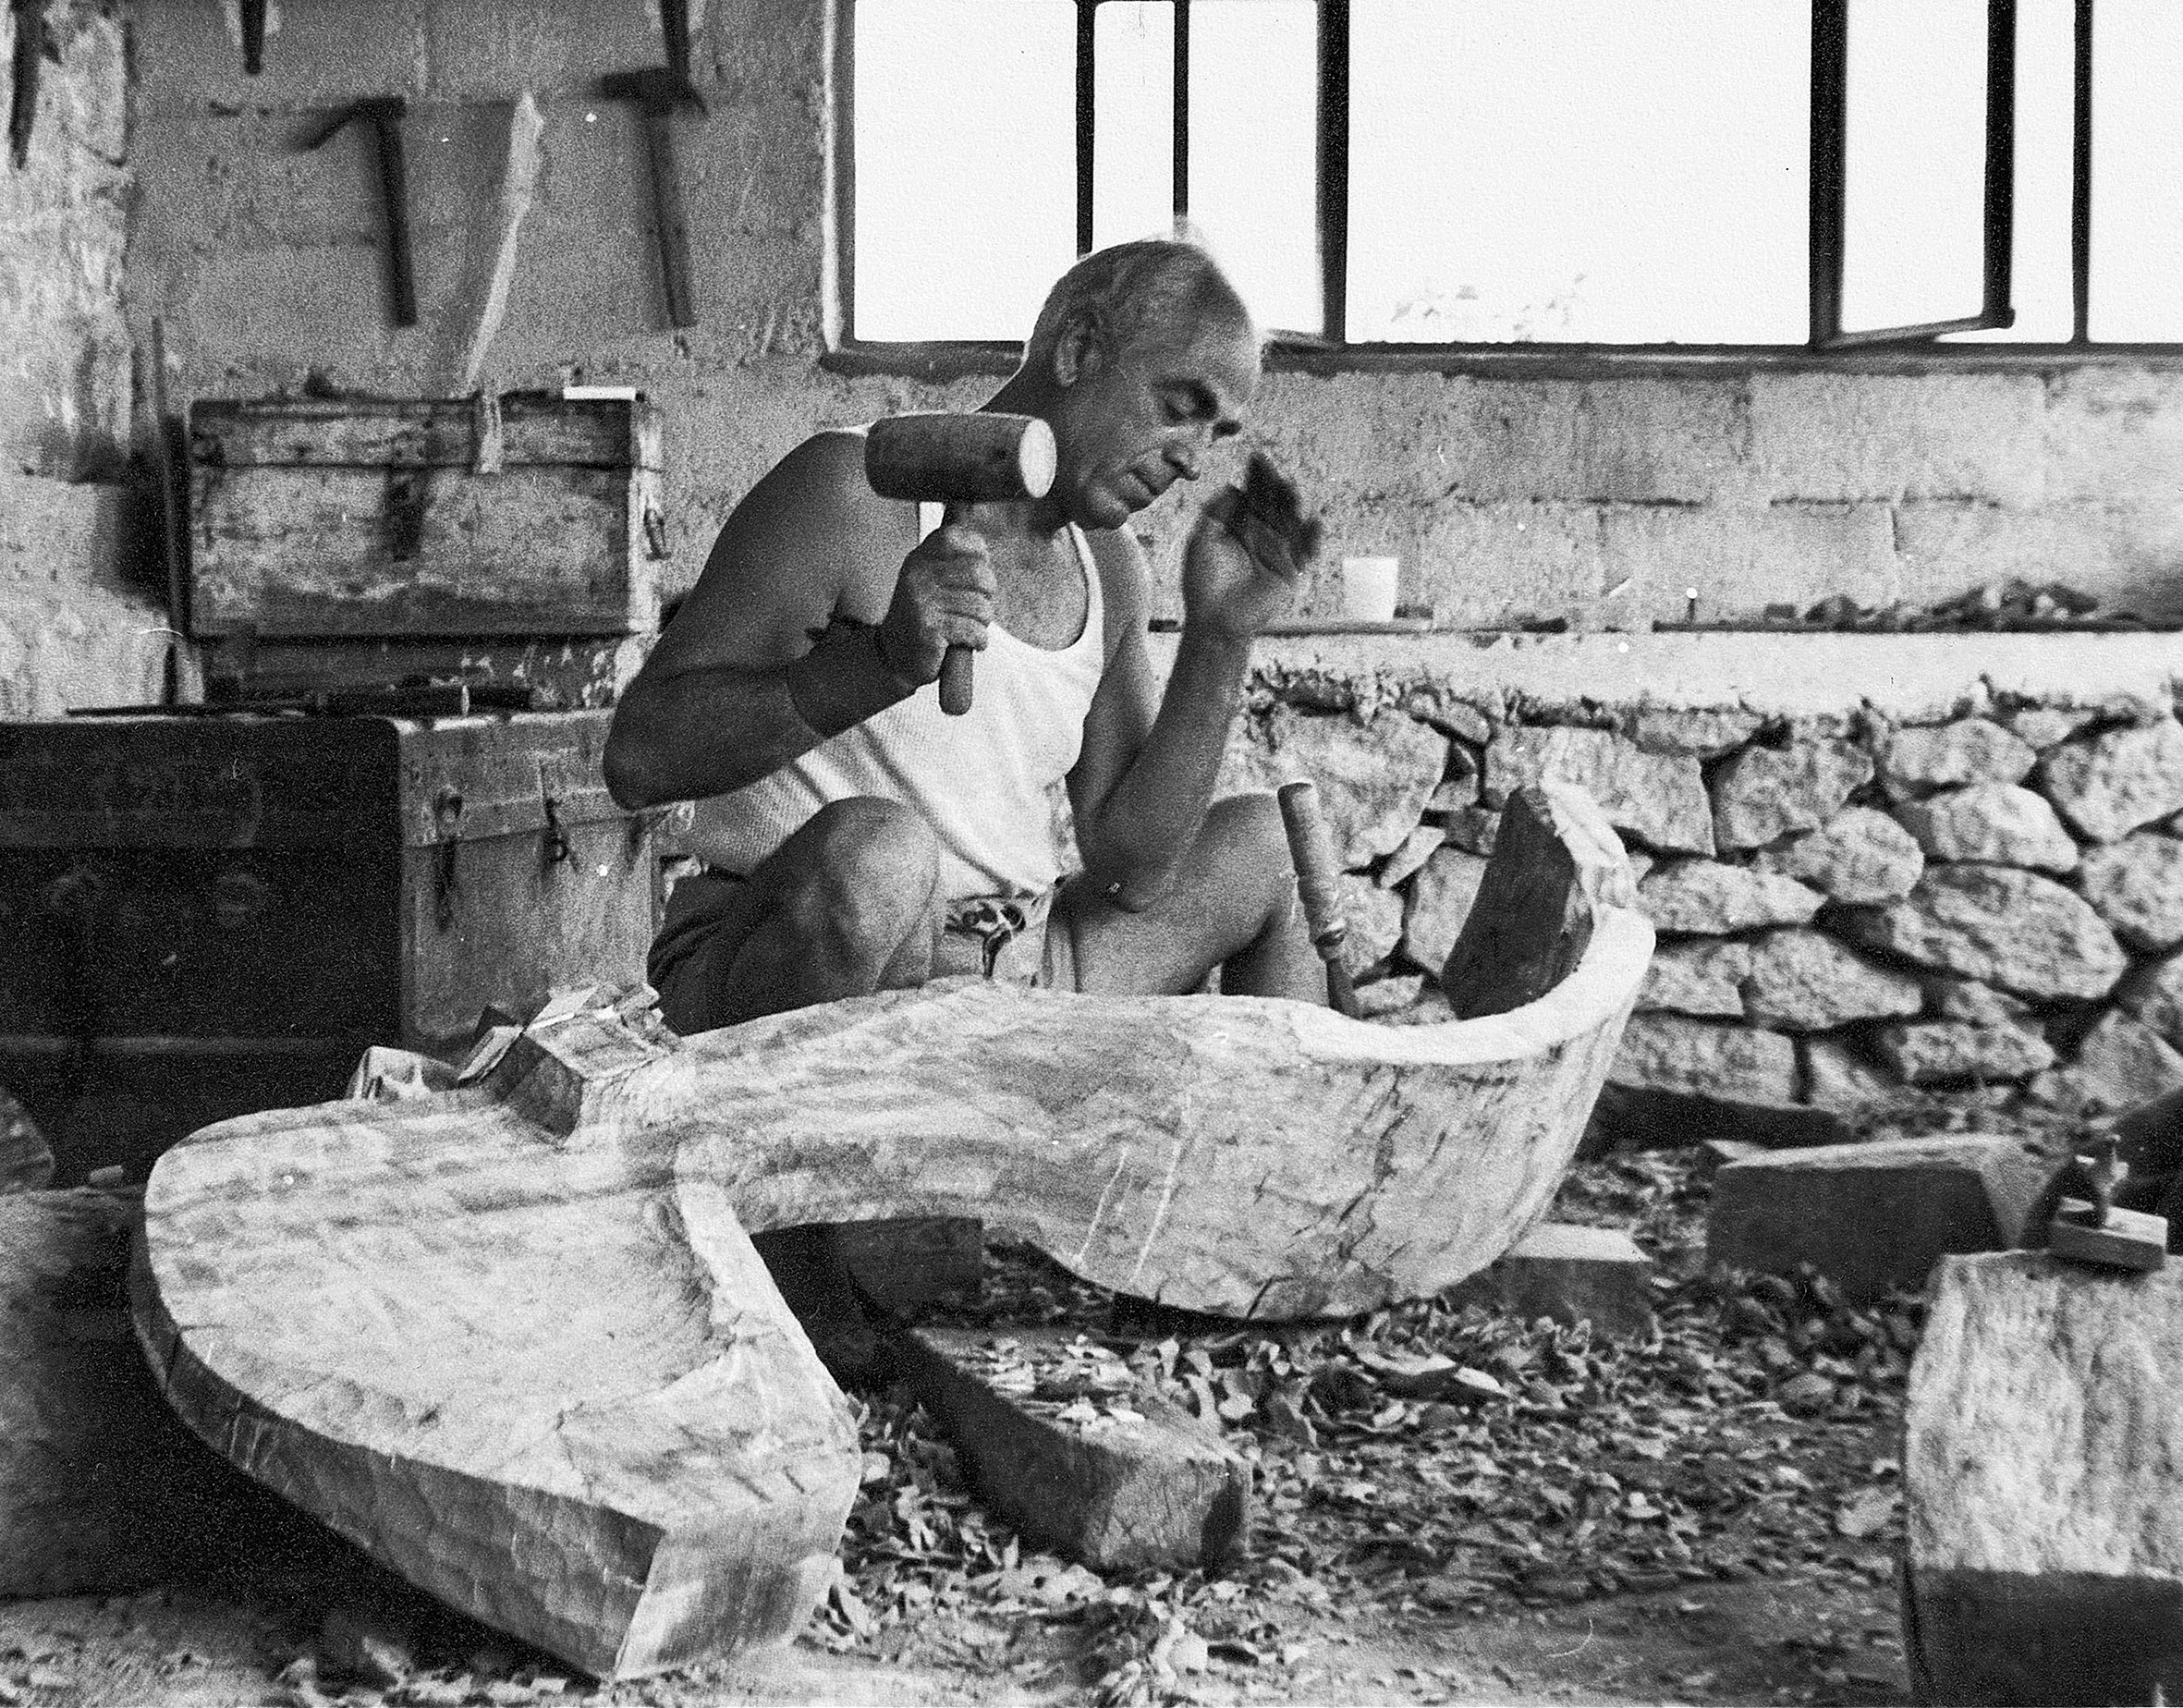 Το σπίτι-εργαστήριο του Χρήστου Καπράλου στην περιοχή Πλακάκια στην Αίγινα, χ.χ. (1965;). Ο γλύπτης στο υπόστεγο εργαστήριο λαξεύει μια ξύλινη μορφή με ματρακά και καλέμι. © Εθνική Πινακοθήκη-Μουσείο Αλεξάνδρου Σούτσου, Αρχείο Χρήστου Καπράλου